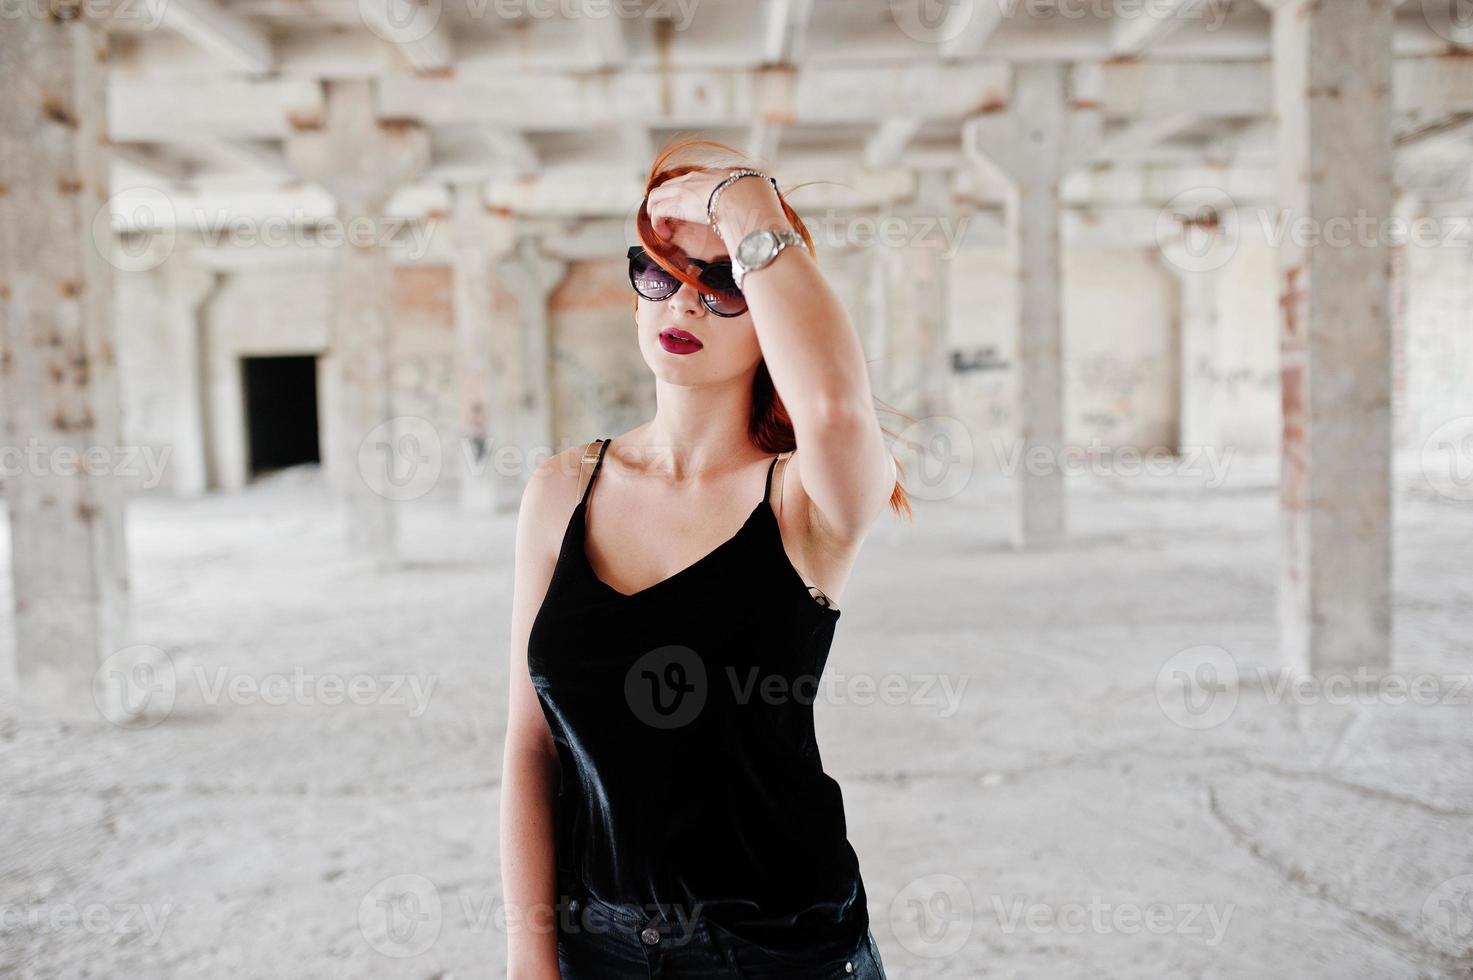 chica elegante de pelo rojo con gafas de sol vestidas de negro, contra un lugar abandonado. foto